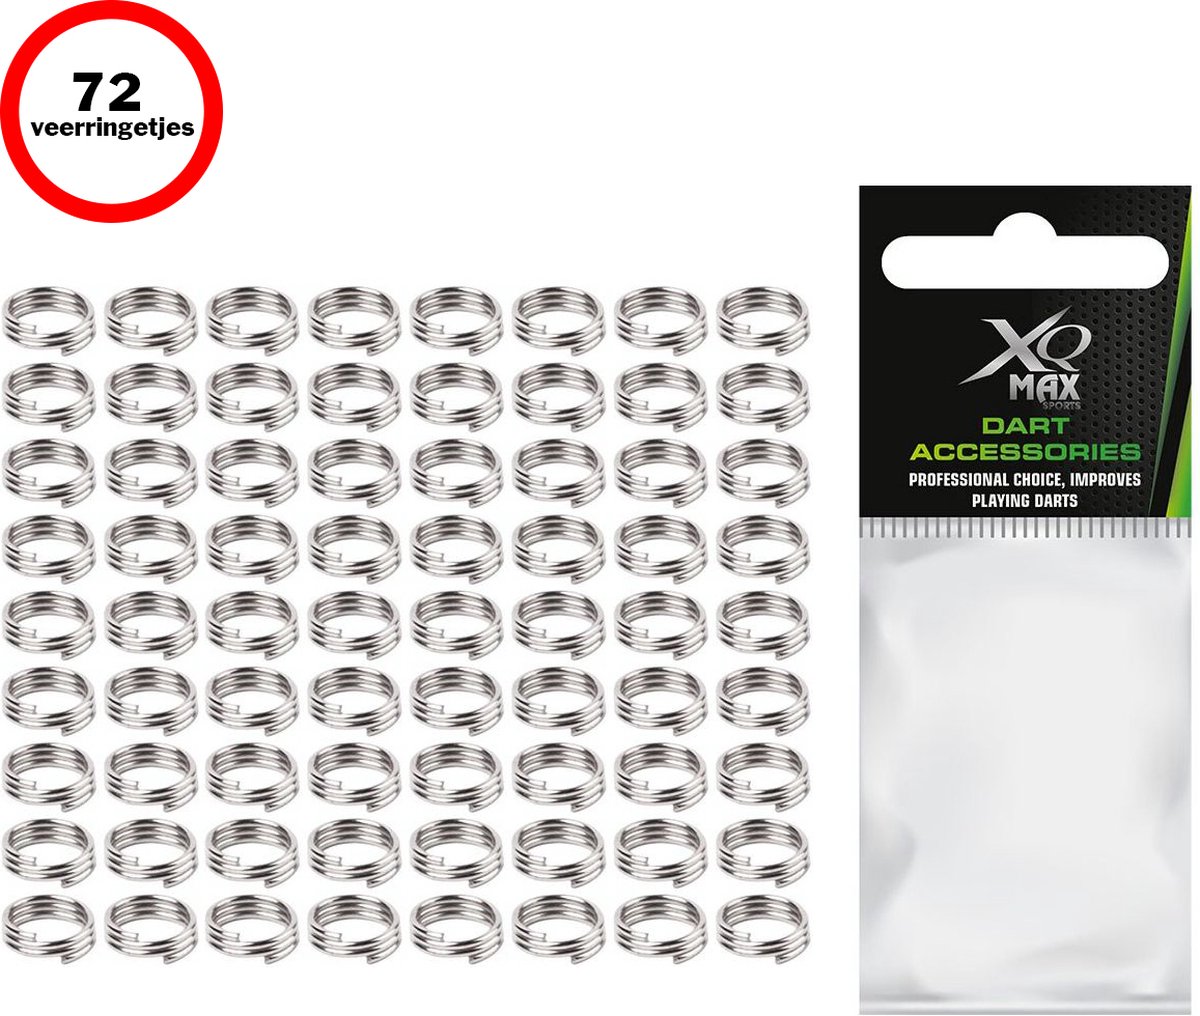 XQMax Veerringetjes voor Dart Shafts - 72 stuks - Zilver - Dart Accessoires